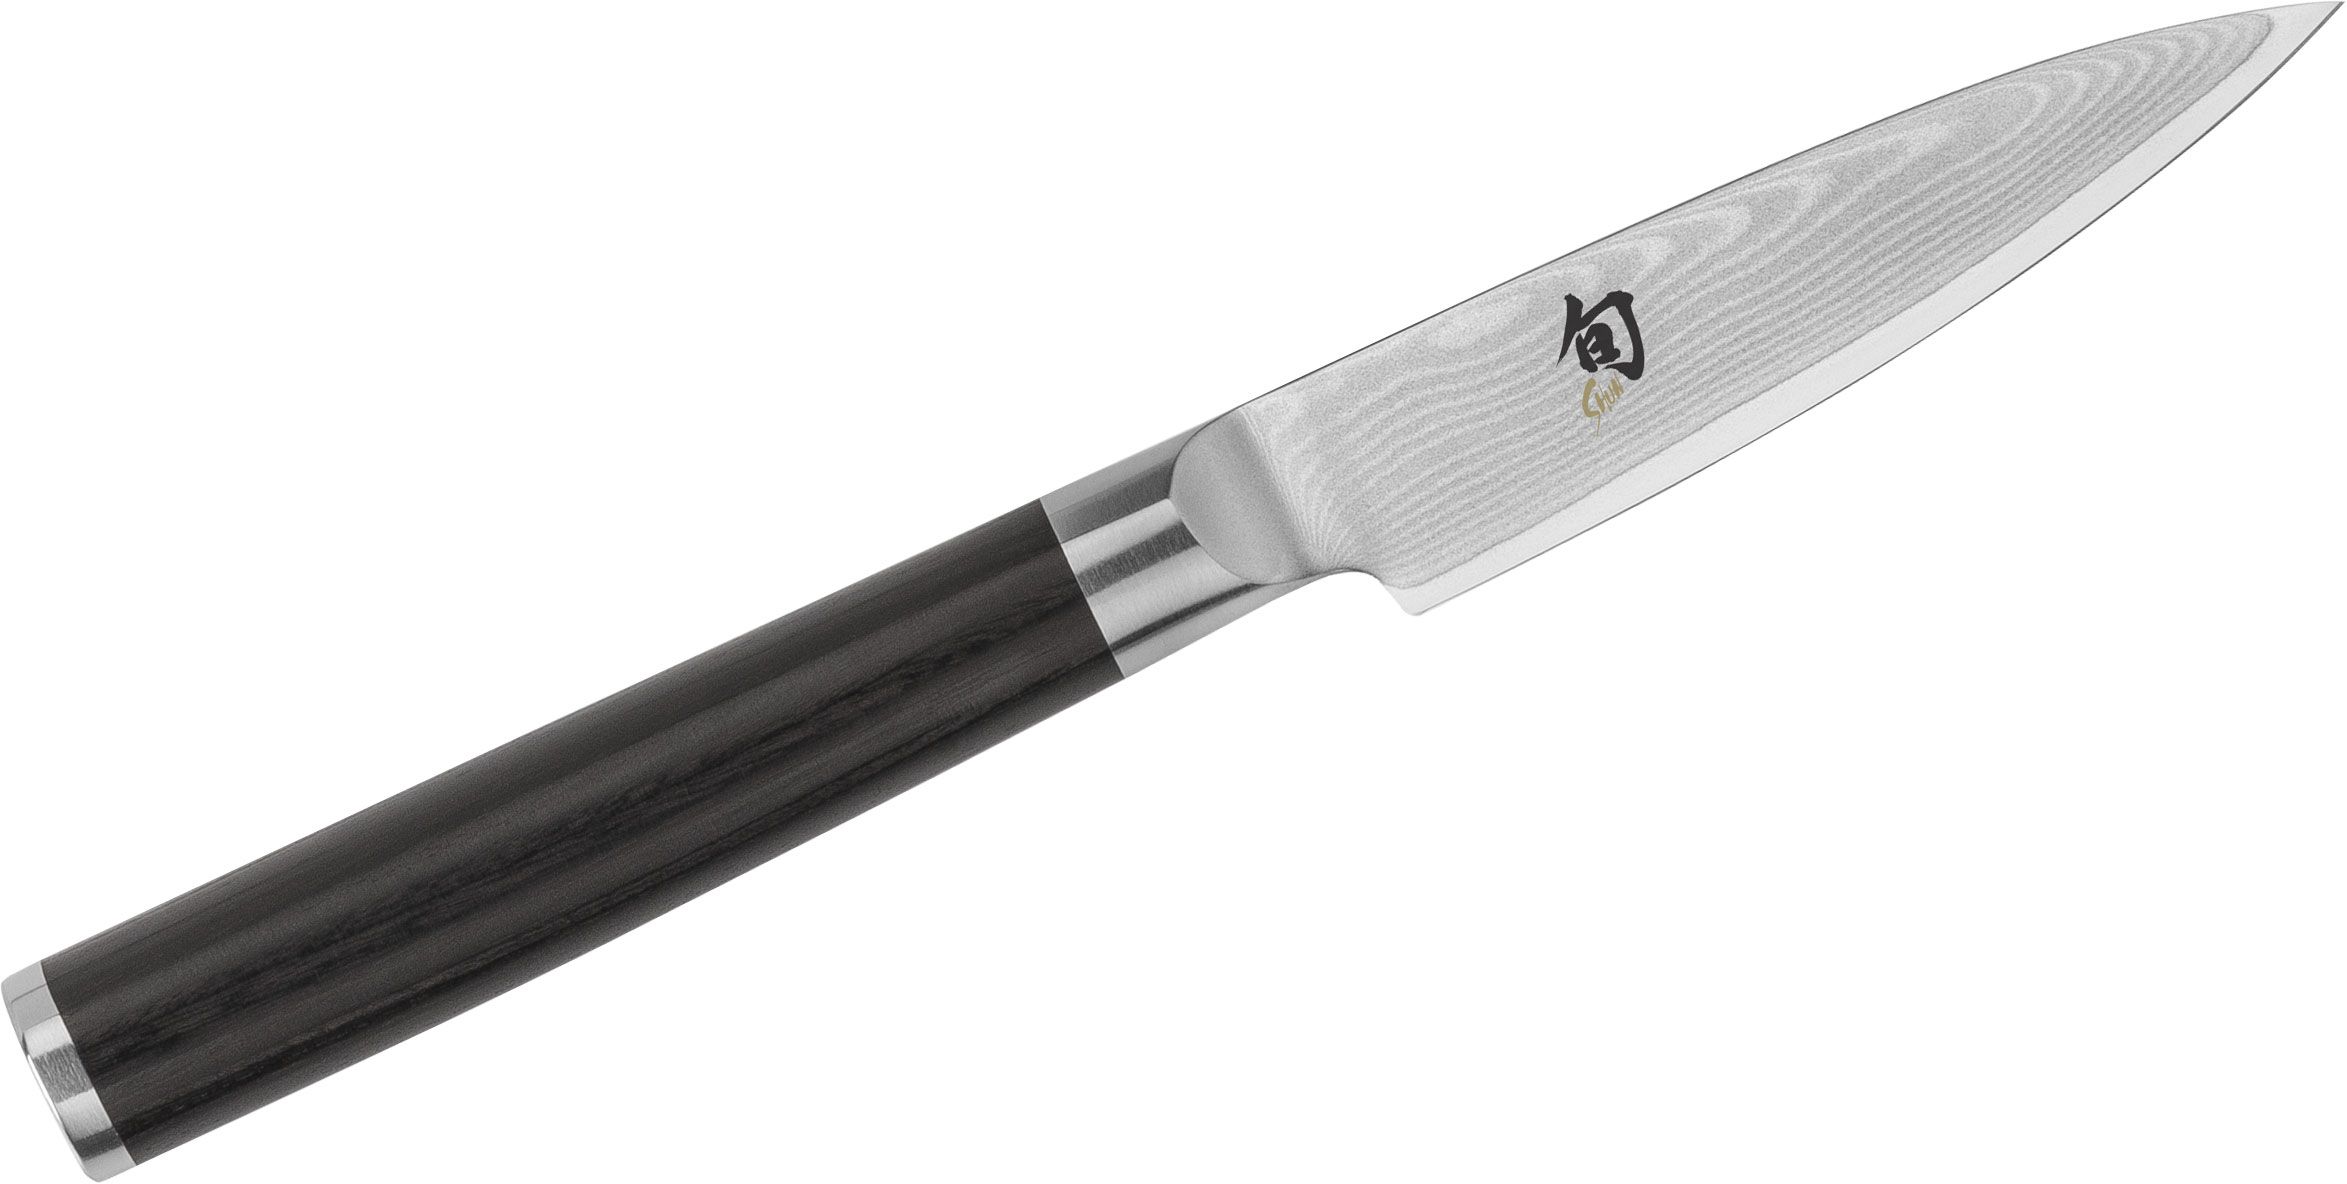 KOTAI Paring Knife - Pakka Collection - 90 mm blade